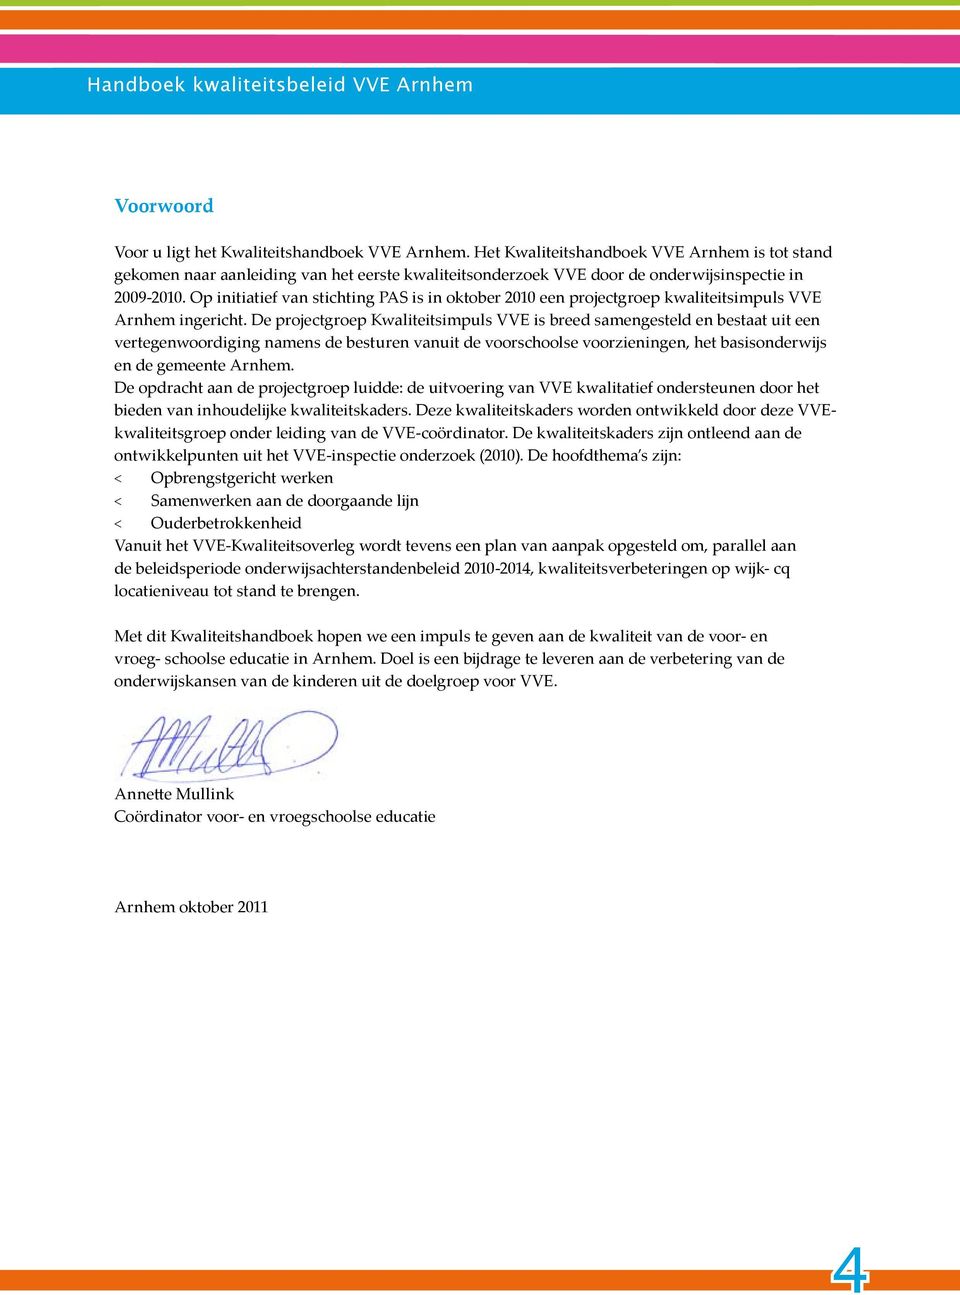 Op initiatief van stihting PAS is in oktober 2010 een projetgroep kwaliteitsimpuls VVE Arnhem ingeriht.